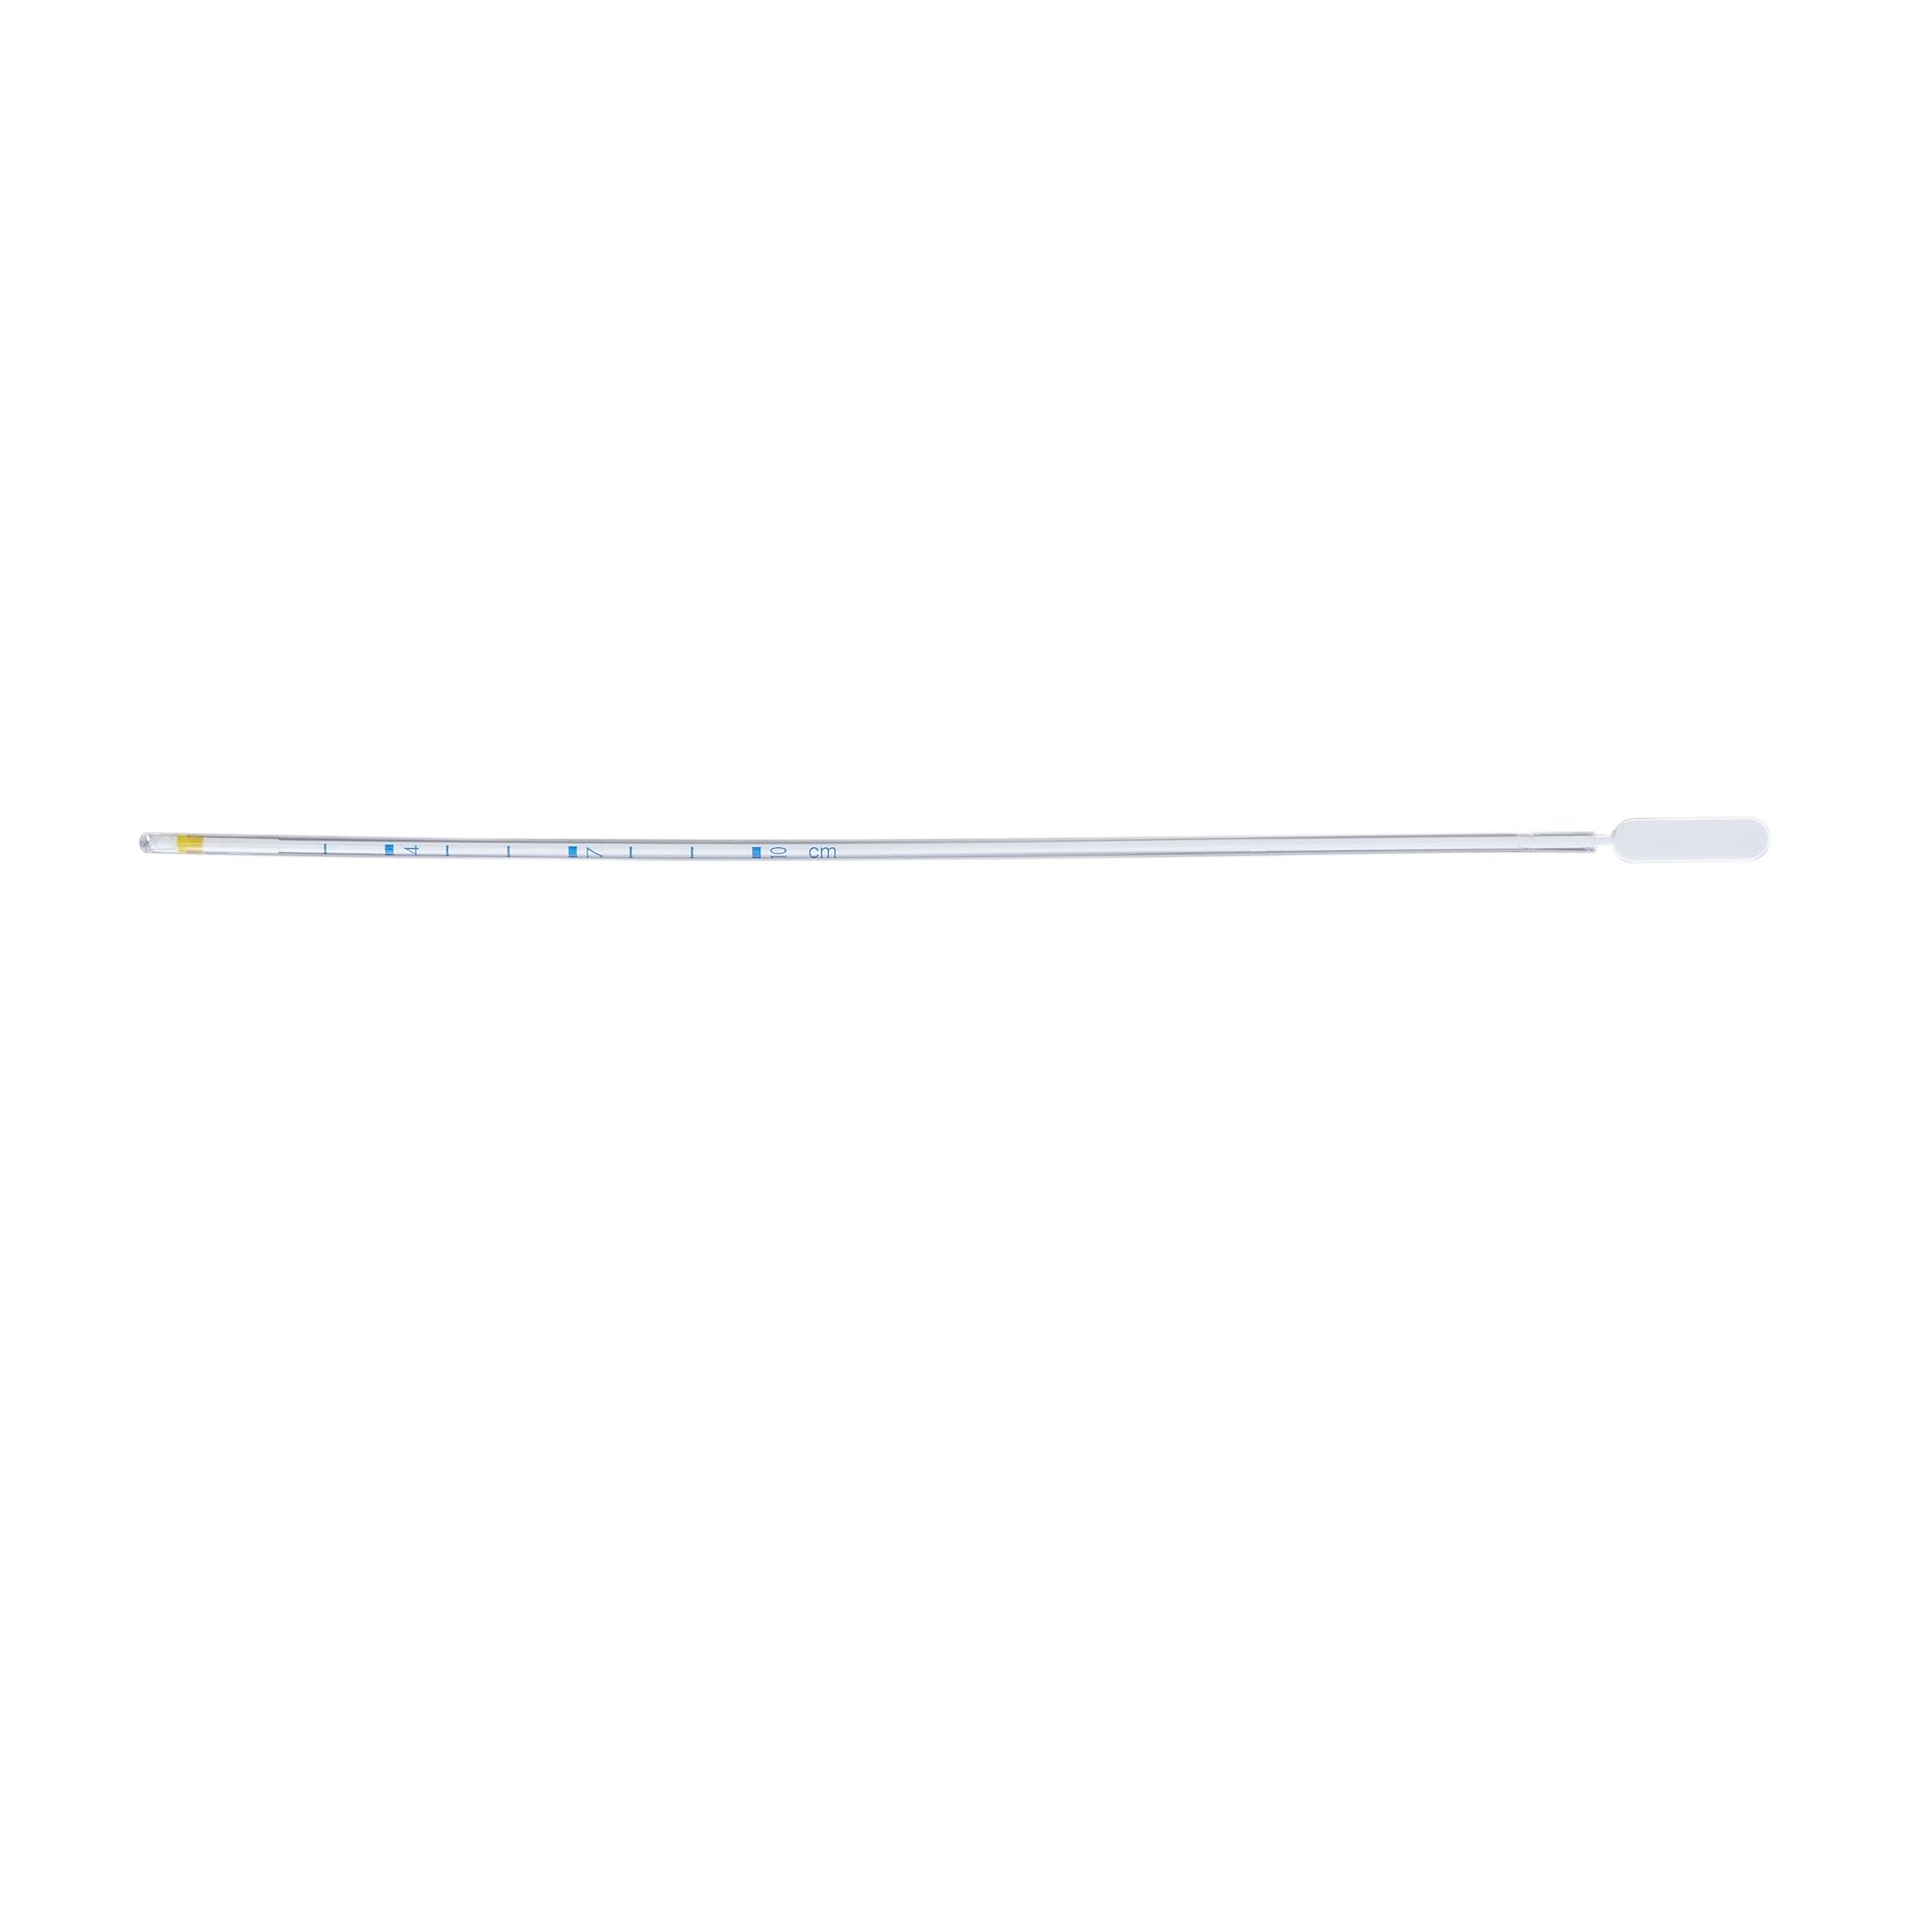 Pipelle De Cornier® Endometrial Sampling Device 23.5 cm Length Sterile